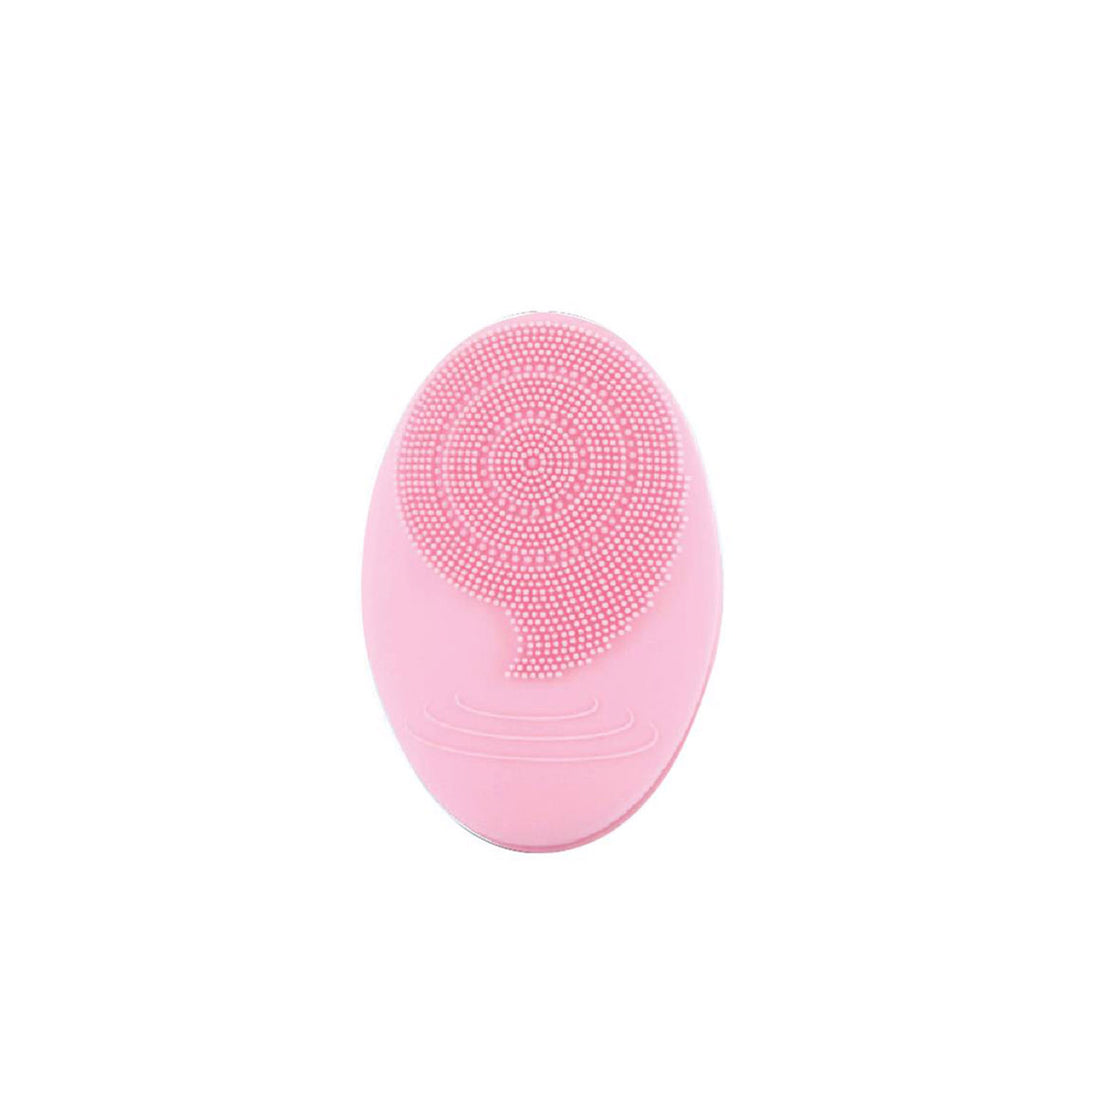 Escova elétrica rosa para limpar o rosto